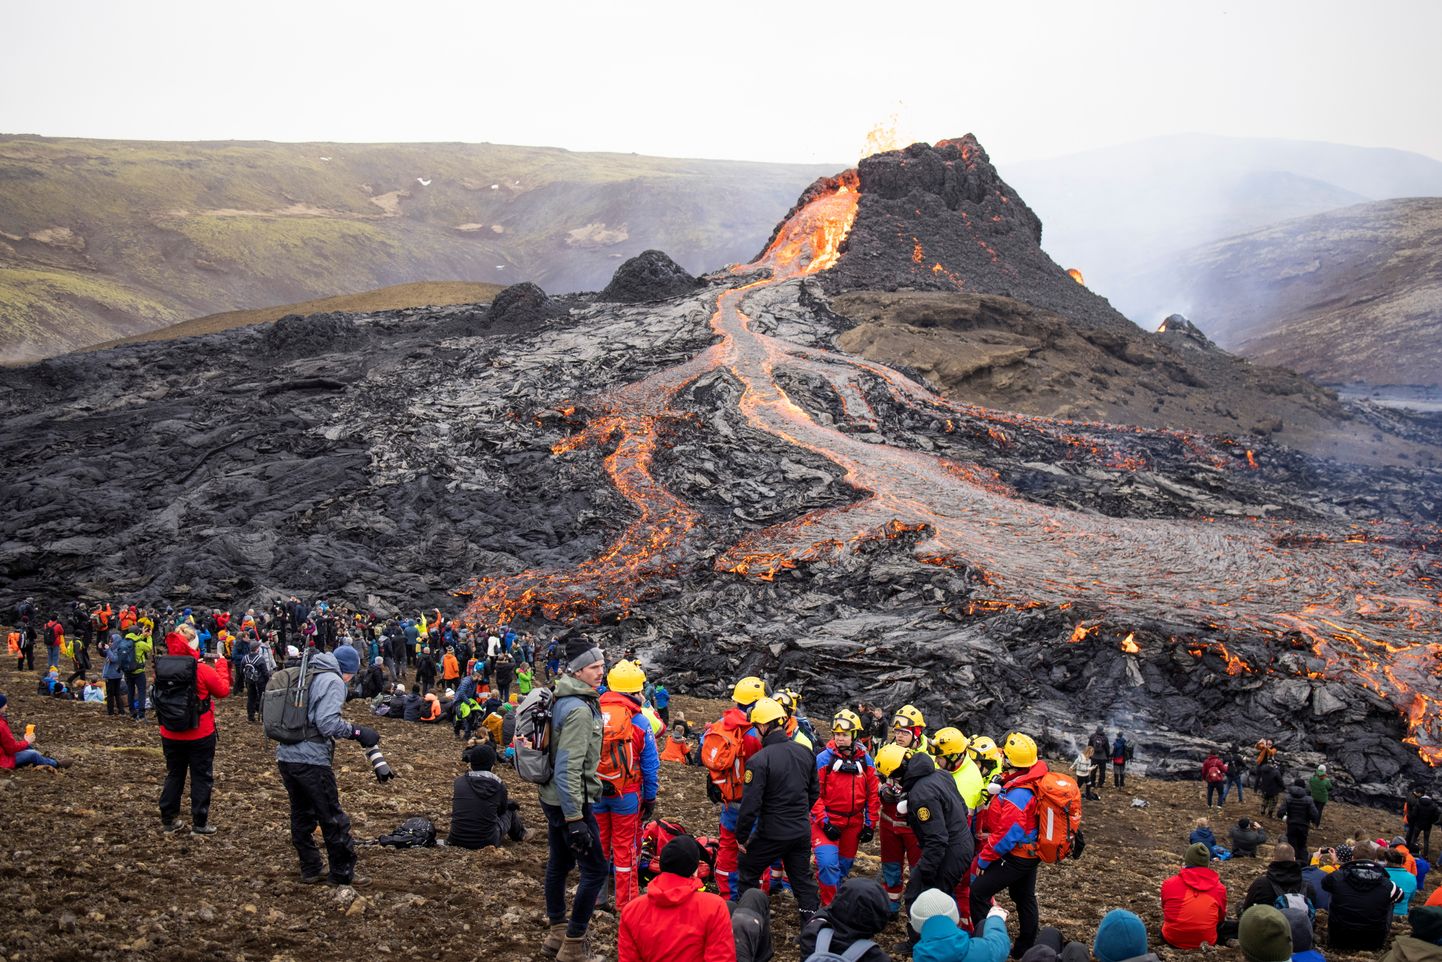 Sajad inimesed läksid vaatama Reykjaviki lähedast Fagradalsfjalli vulkaani, mis hakkas purskama